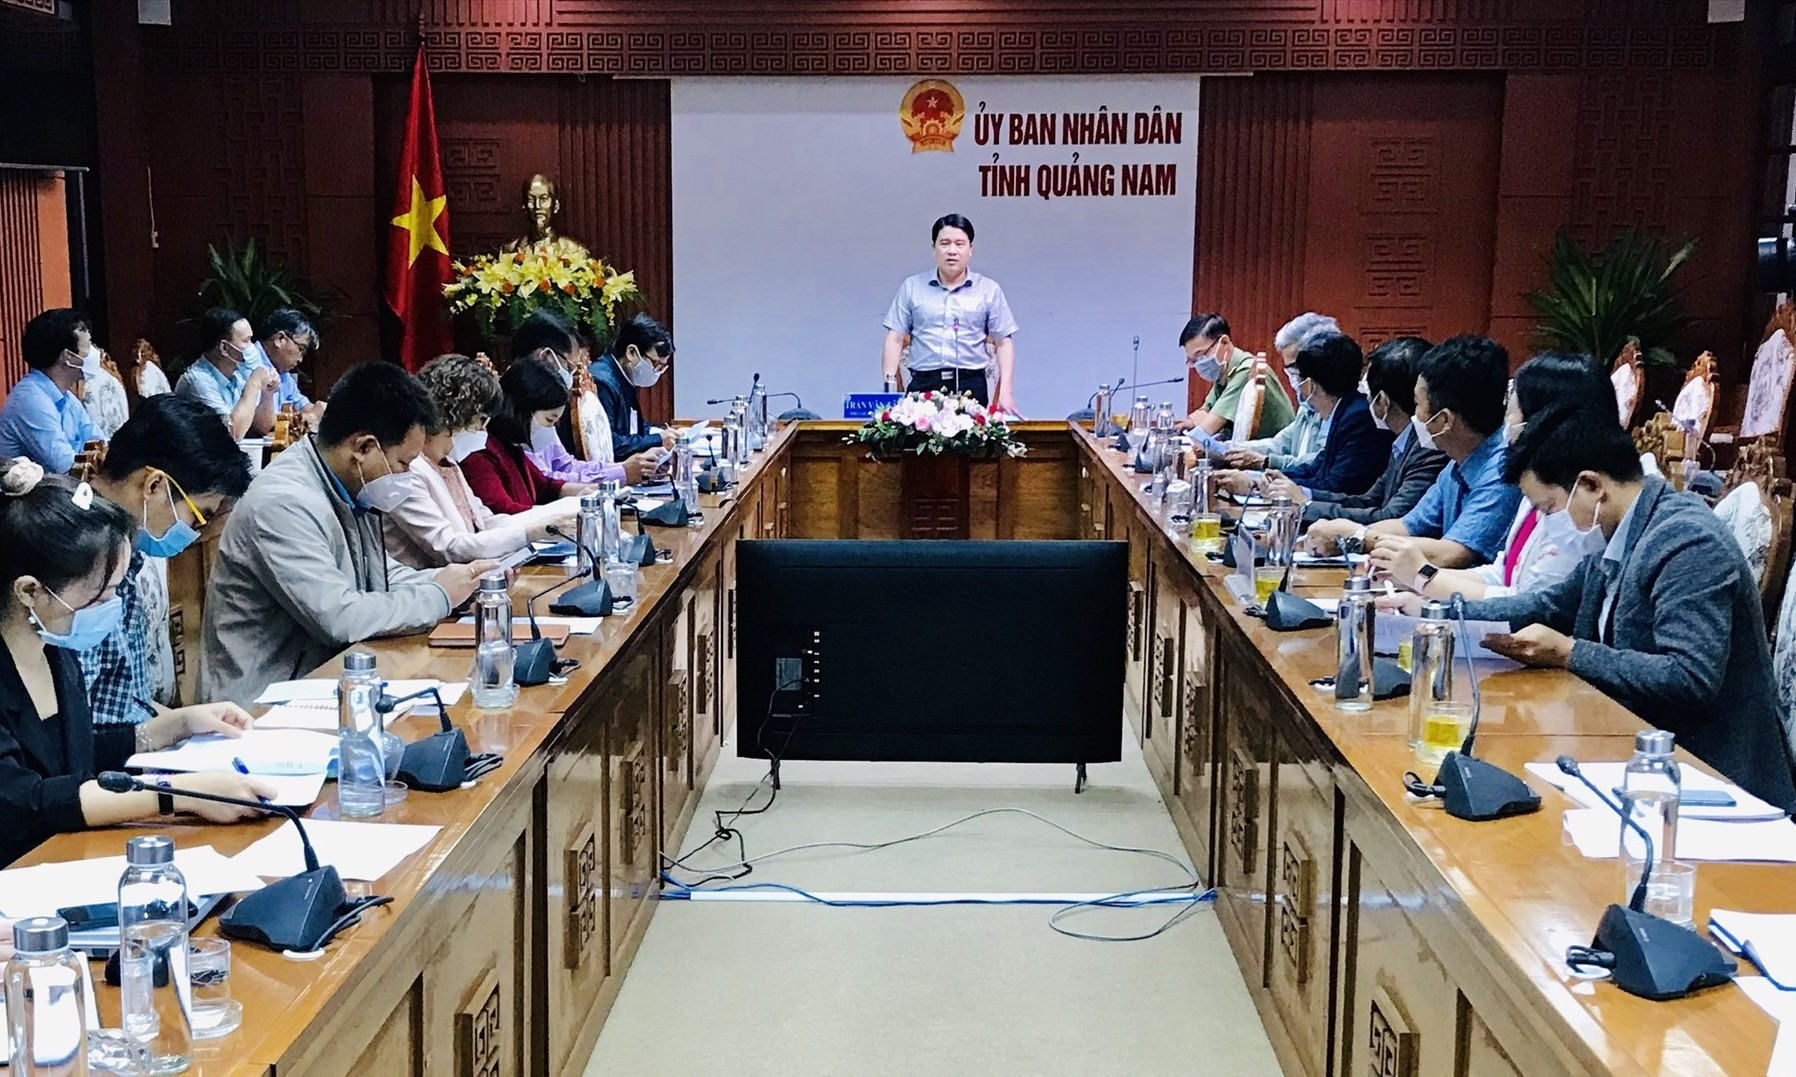 Phó Chủ tịch UBND tỉnh Trần Văn Tân chủ trì buổi làm việc. Ảnh: Q.T